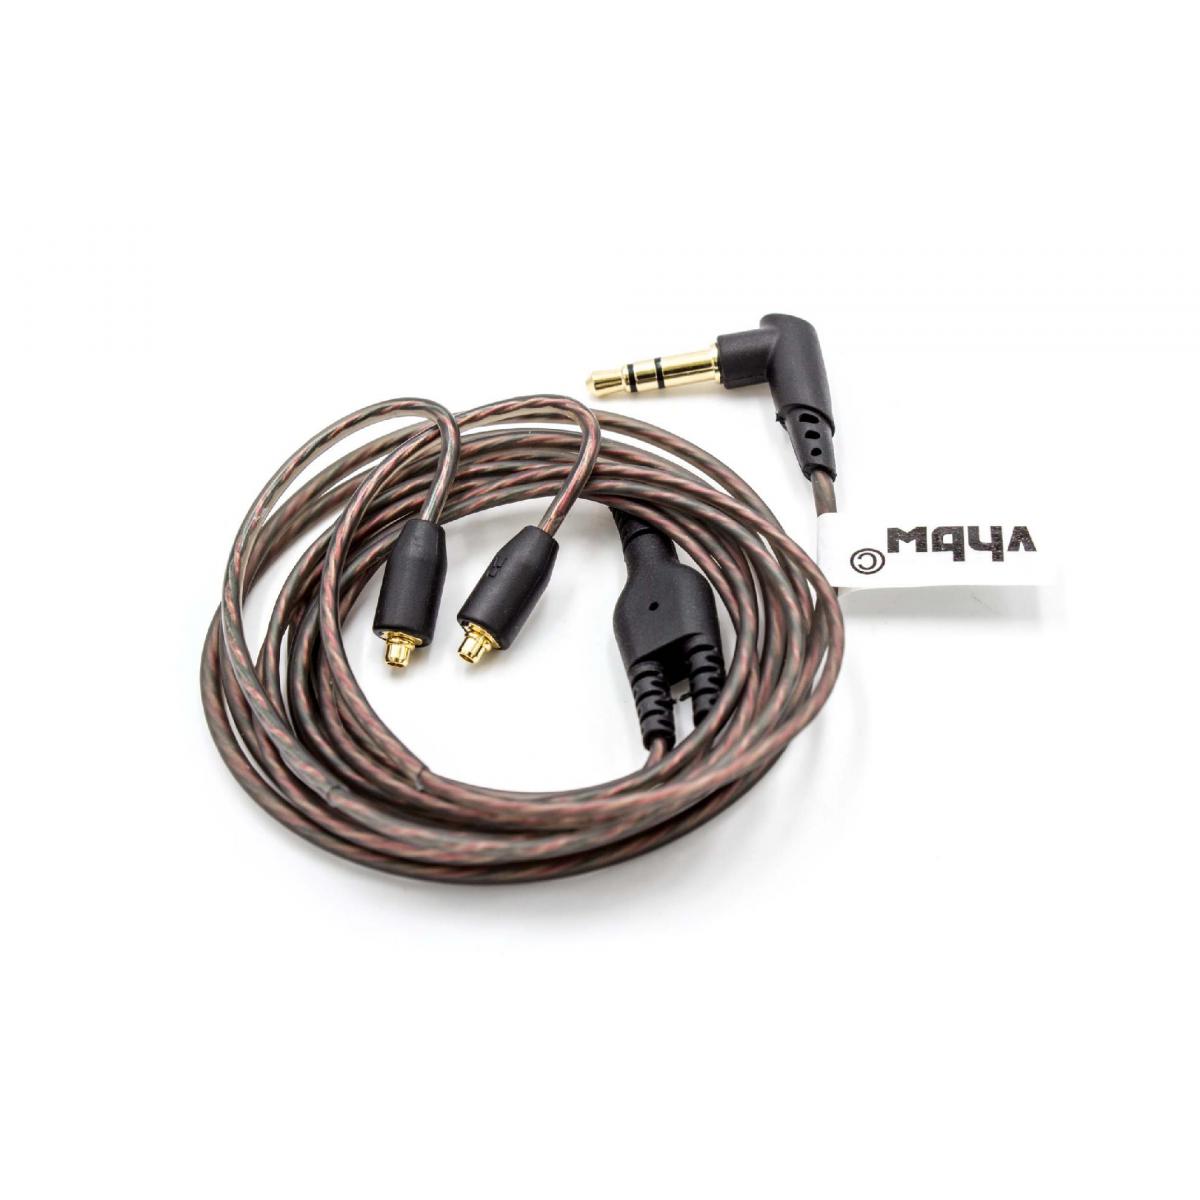 Vhbw - vhbw Câble audio AUX vers prise jack 3,5mm compatible avec Shure SE215, SE315, SE425, SE535, SE846 casque d'écoute, 120cm - Alimentation modulaire